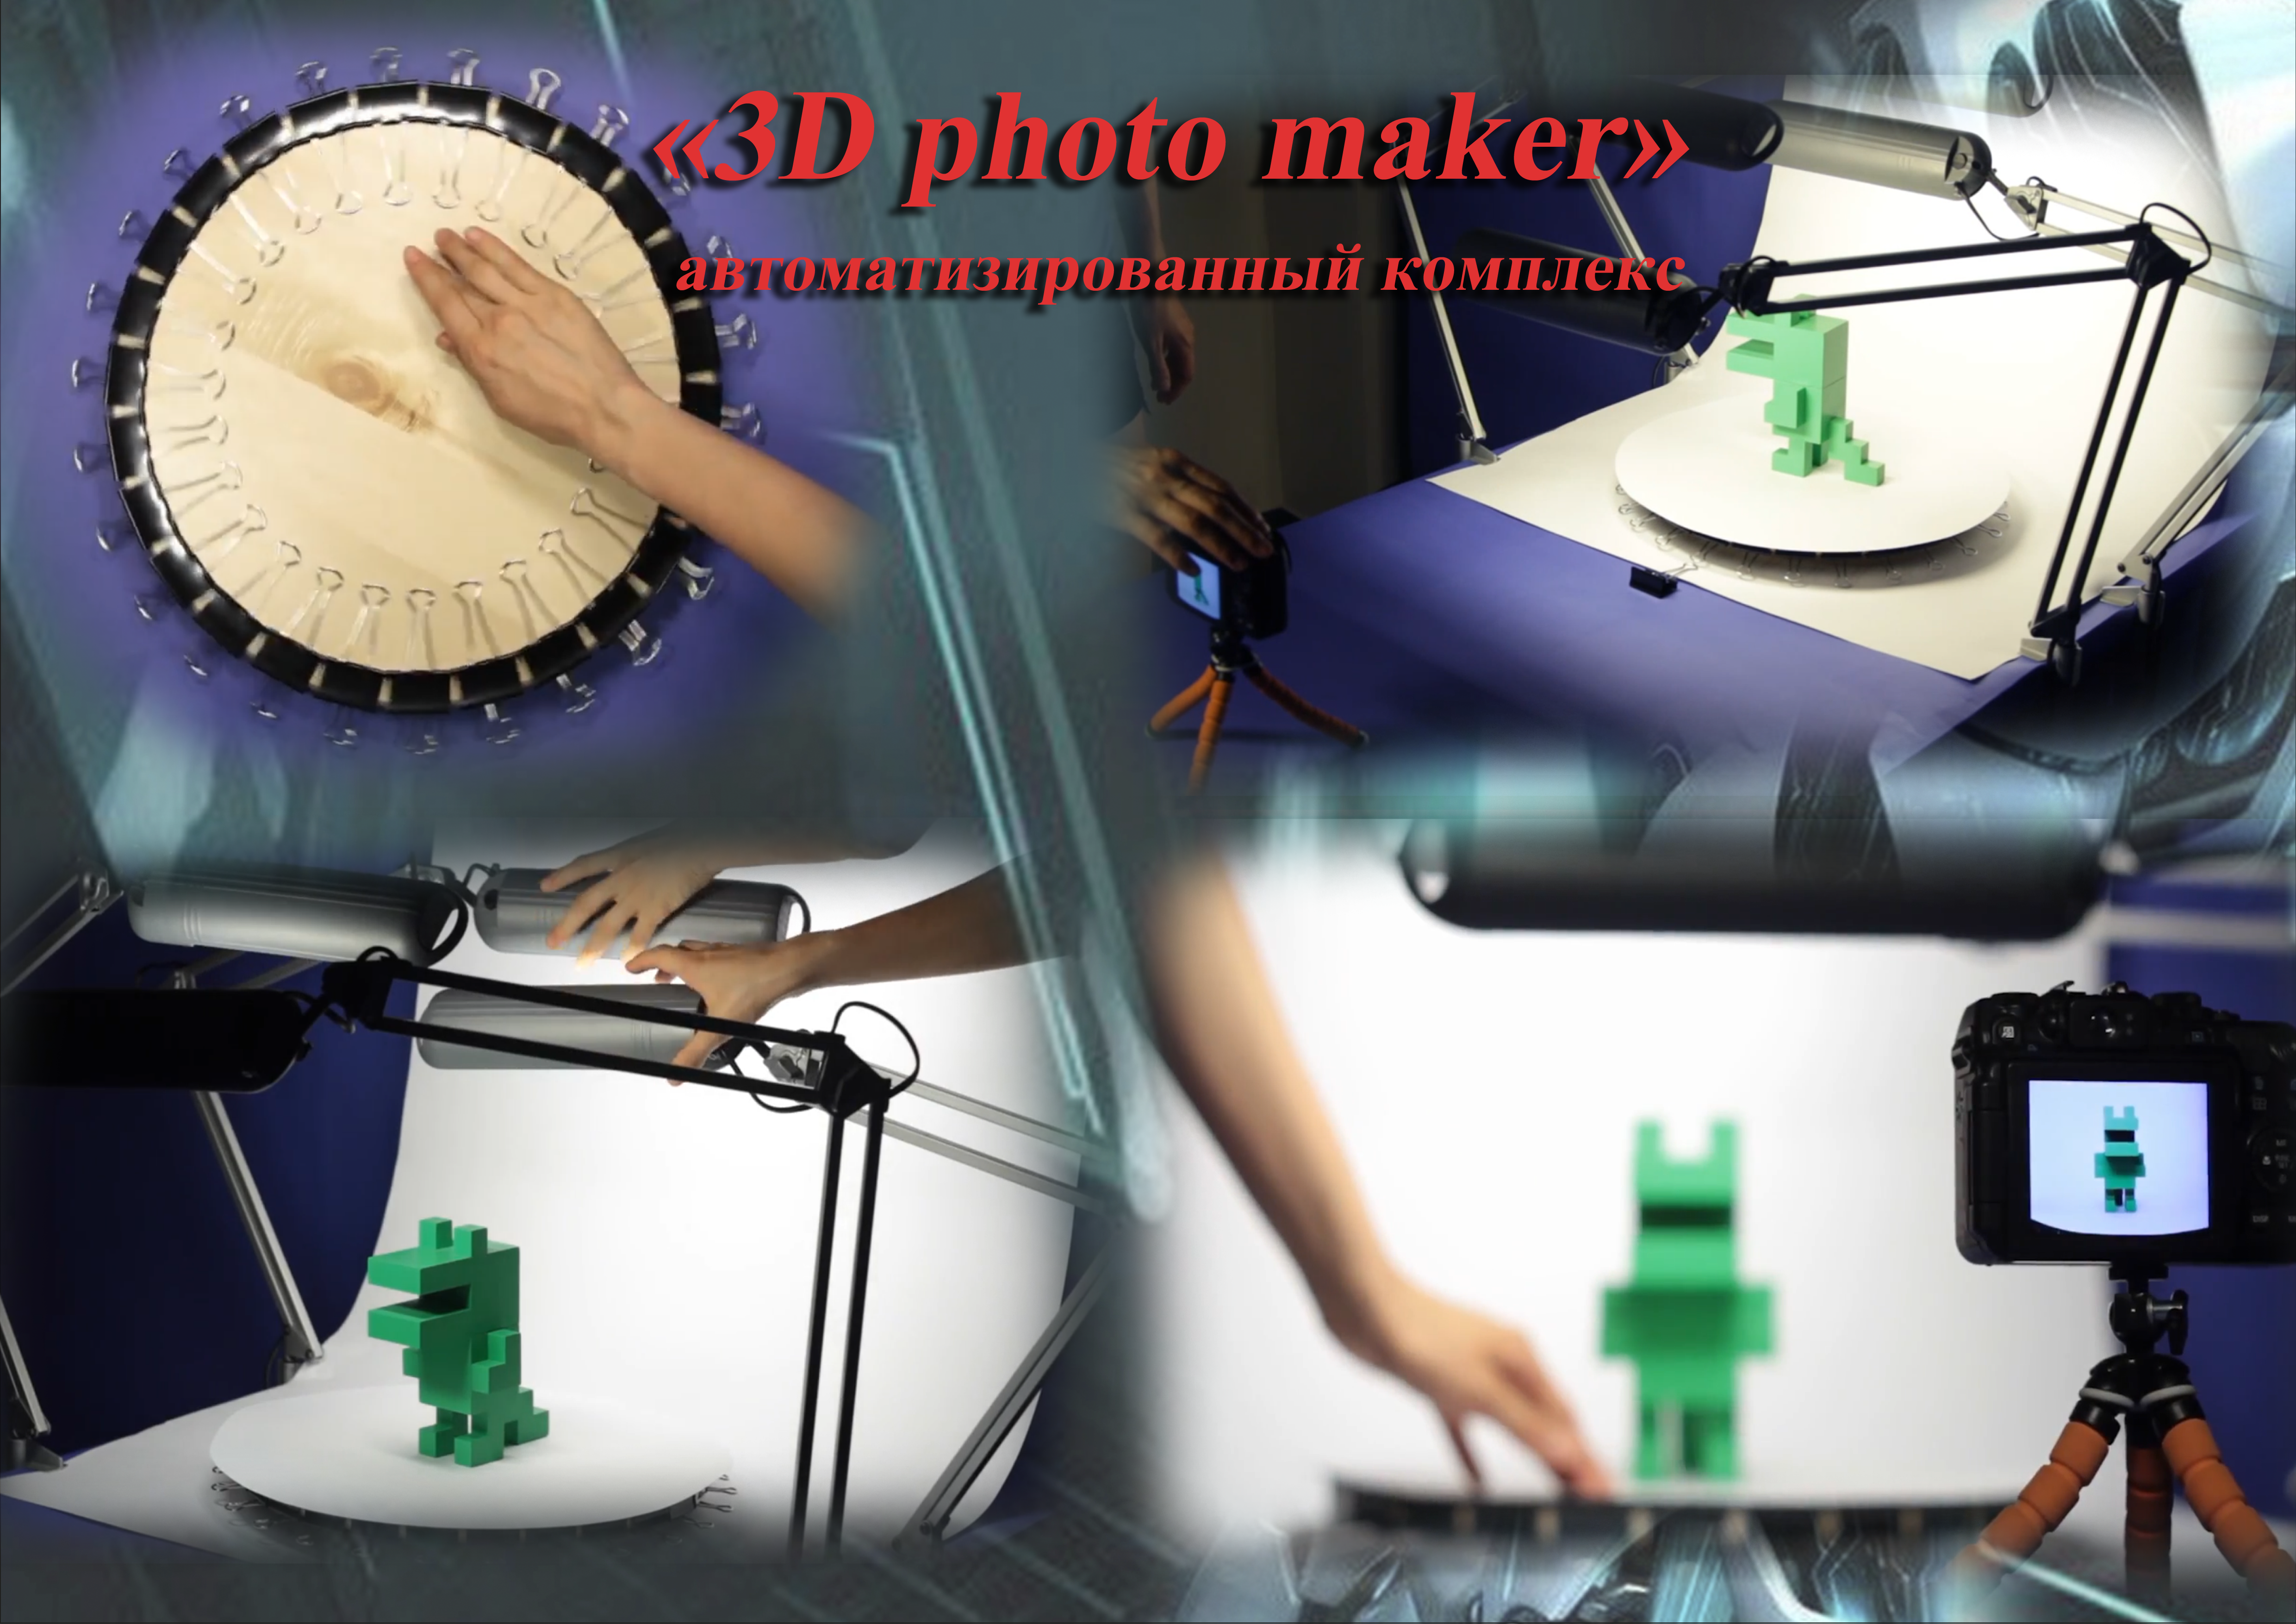 3D photo maker